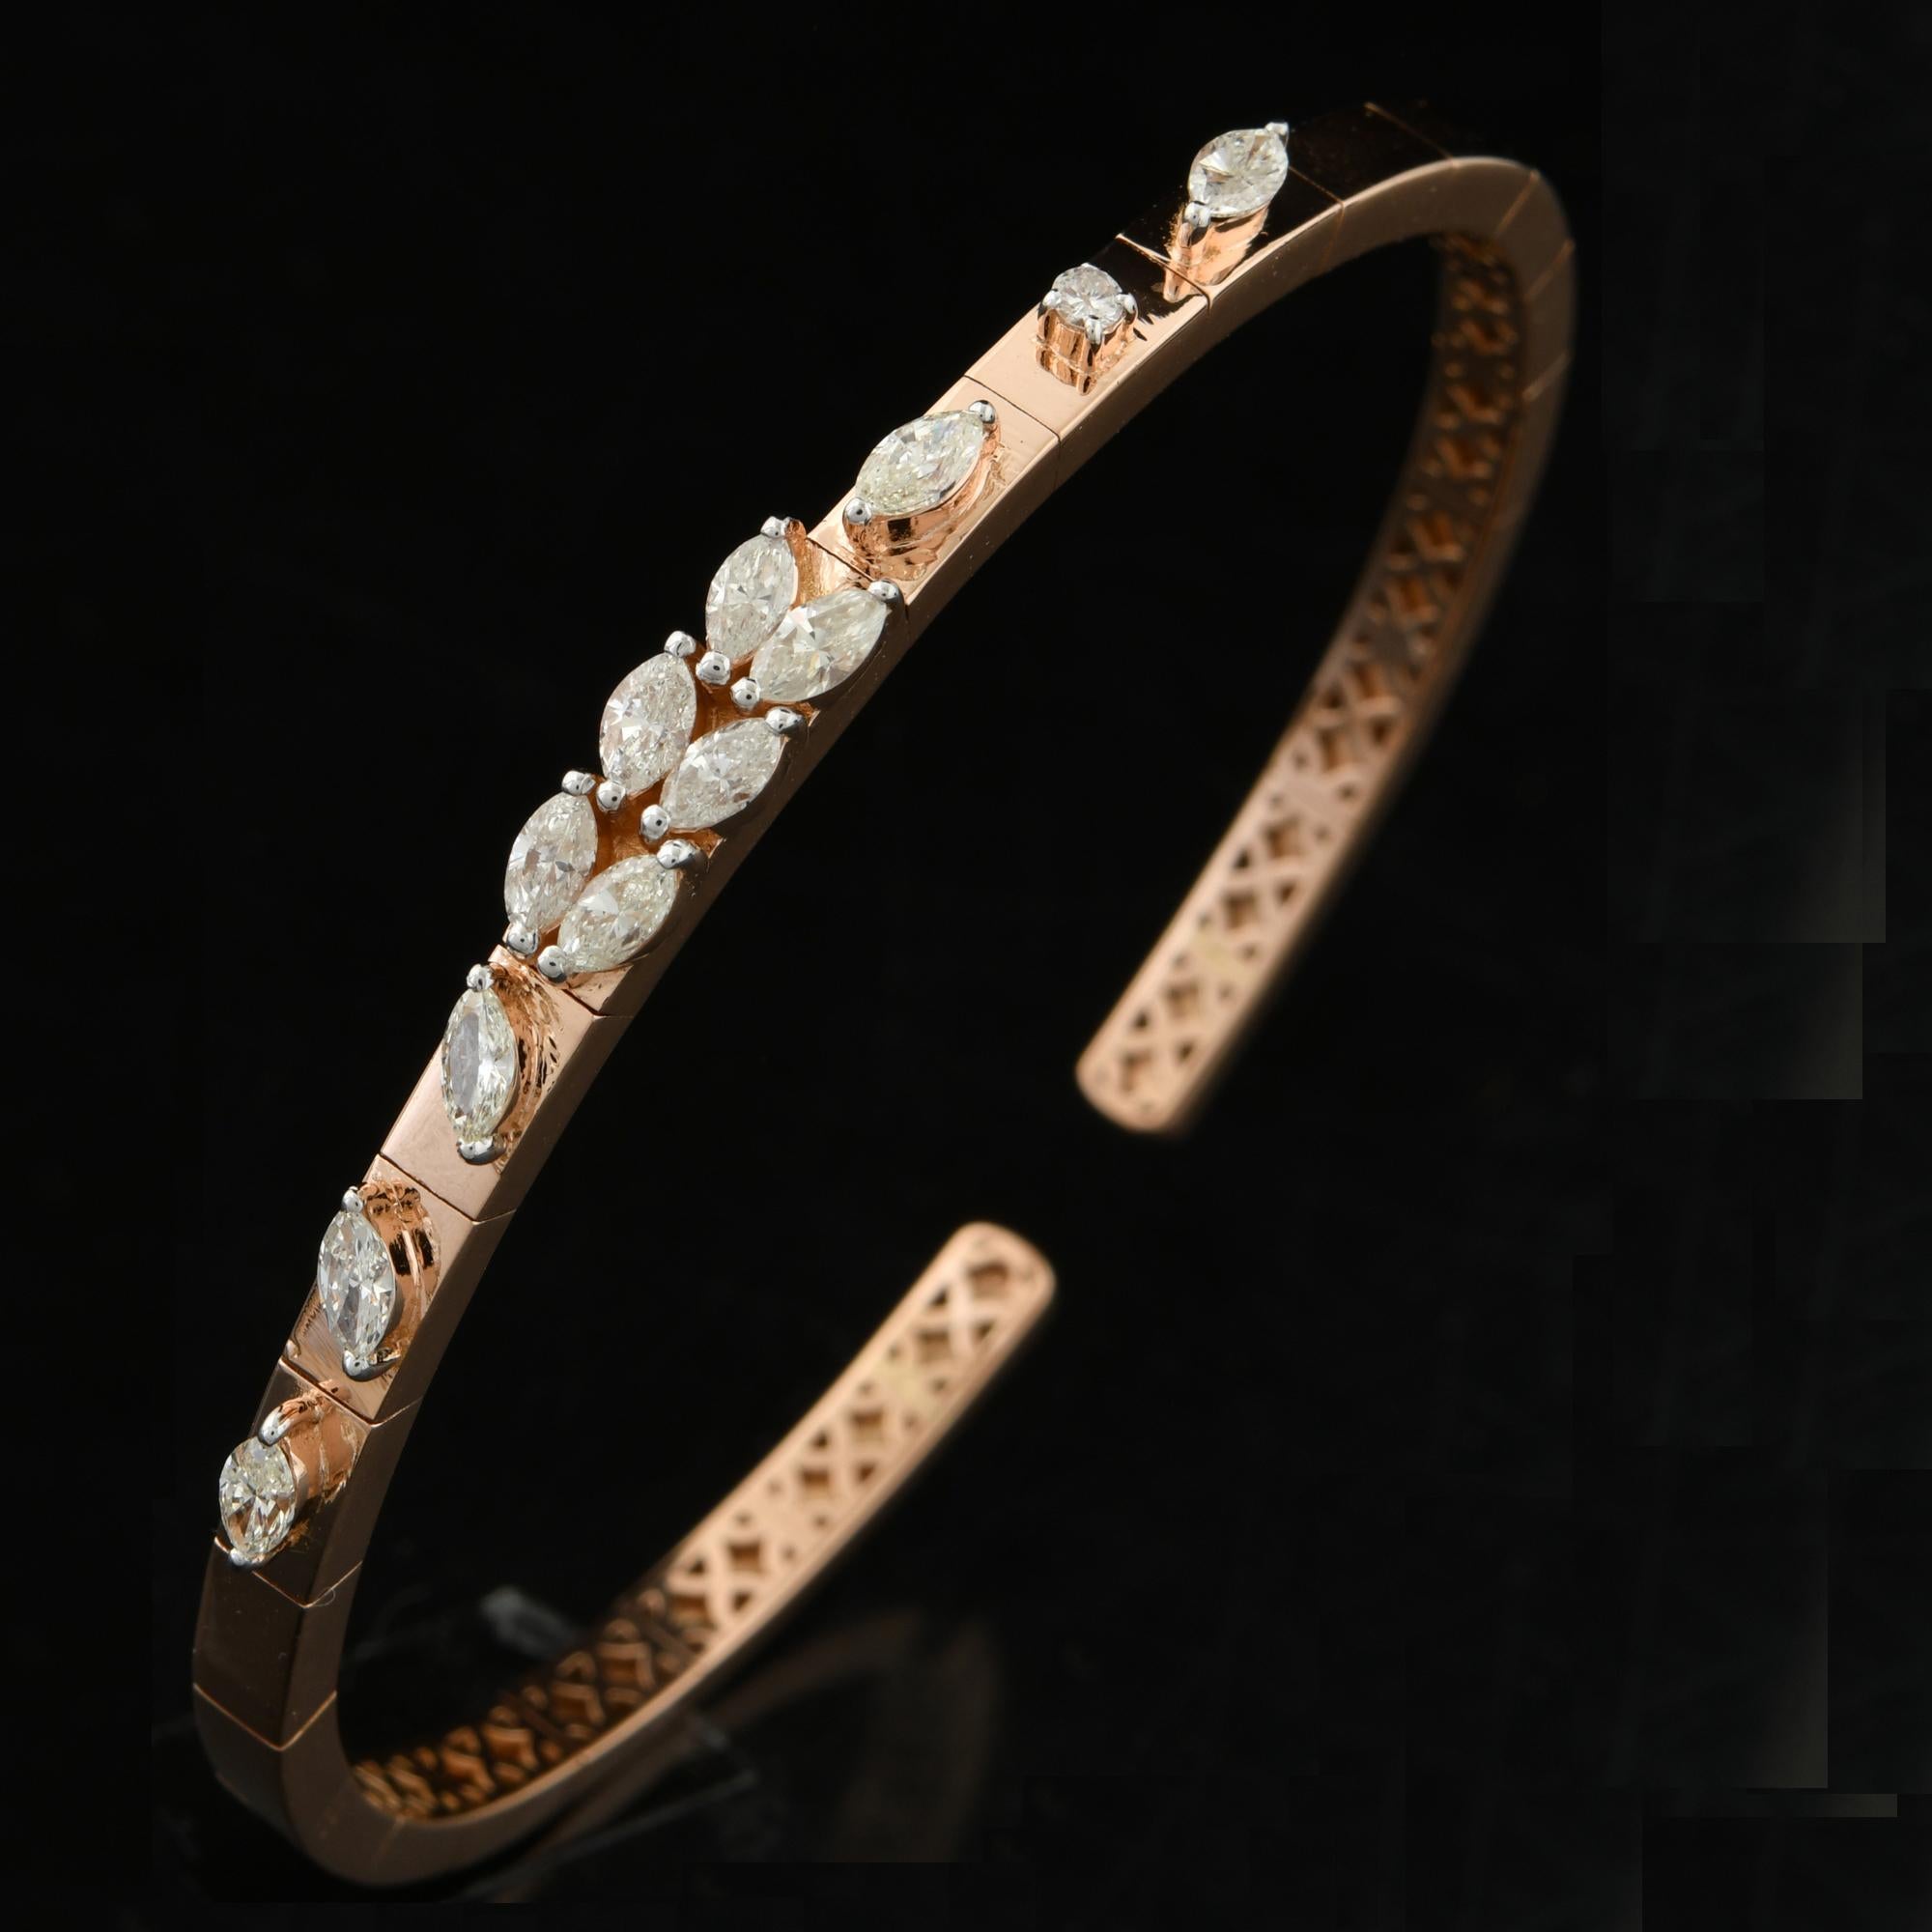 Das Armband zeichnet sich durch ein schlankes und modernes Design aus, mit einem Armreif im Stil einer Manschette, der sich anmutig um das Handgelenk legt. Der Armreif ist aus hochwertigem 14-karätigem Gelbgold gefertigt, das für seinen satten und